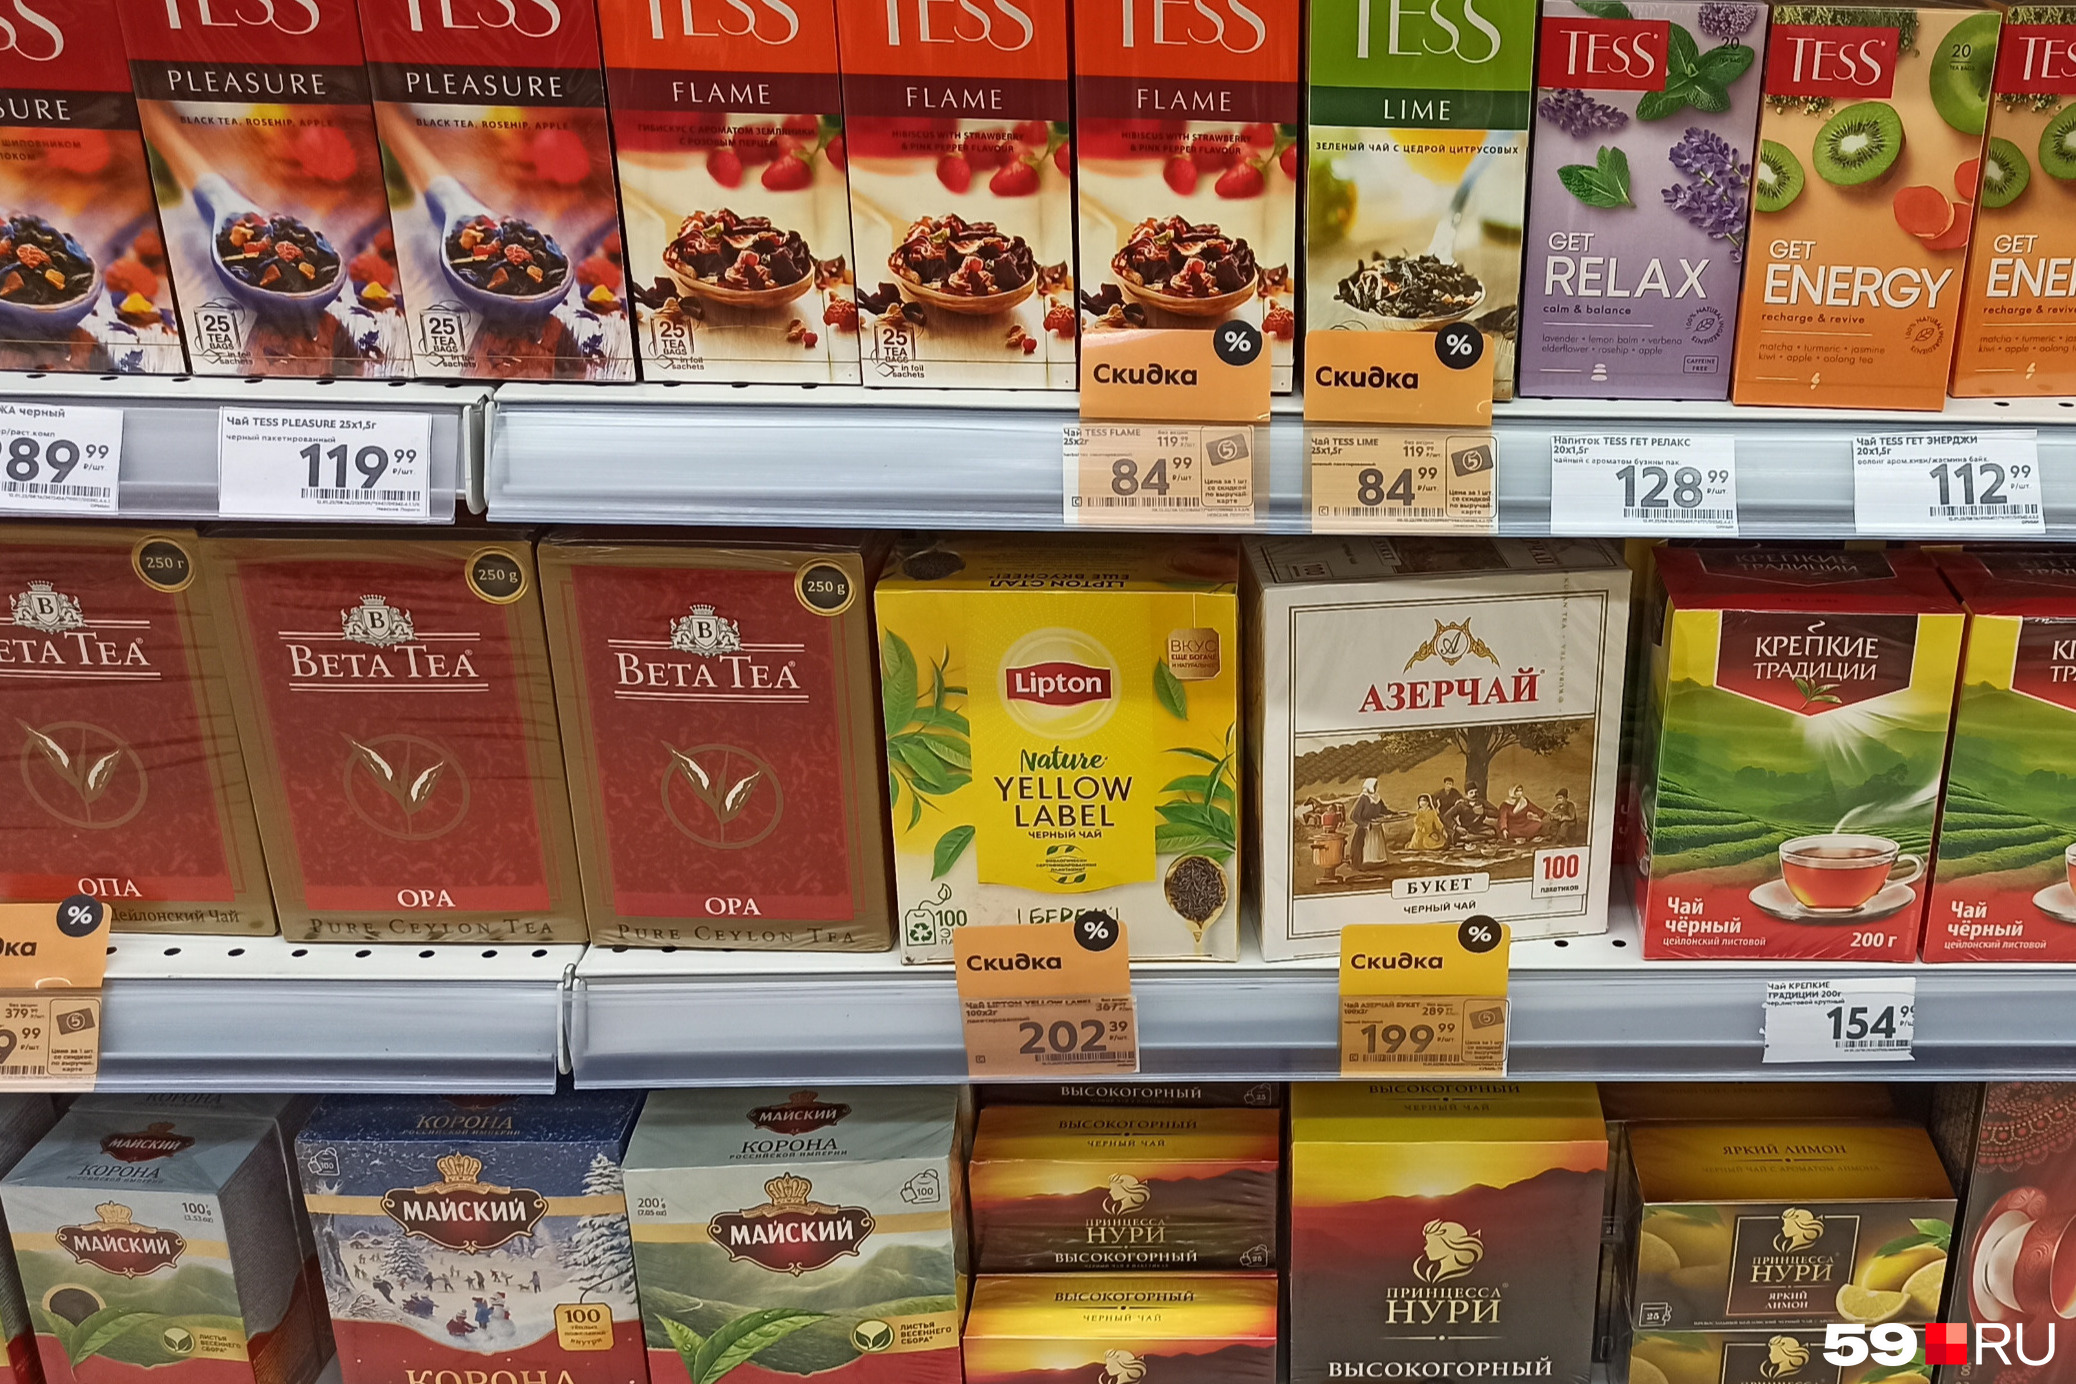 Производитель Lipton говорил, что перестанет его изготавливать, но чай все еще есть в каждом магазине